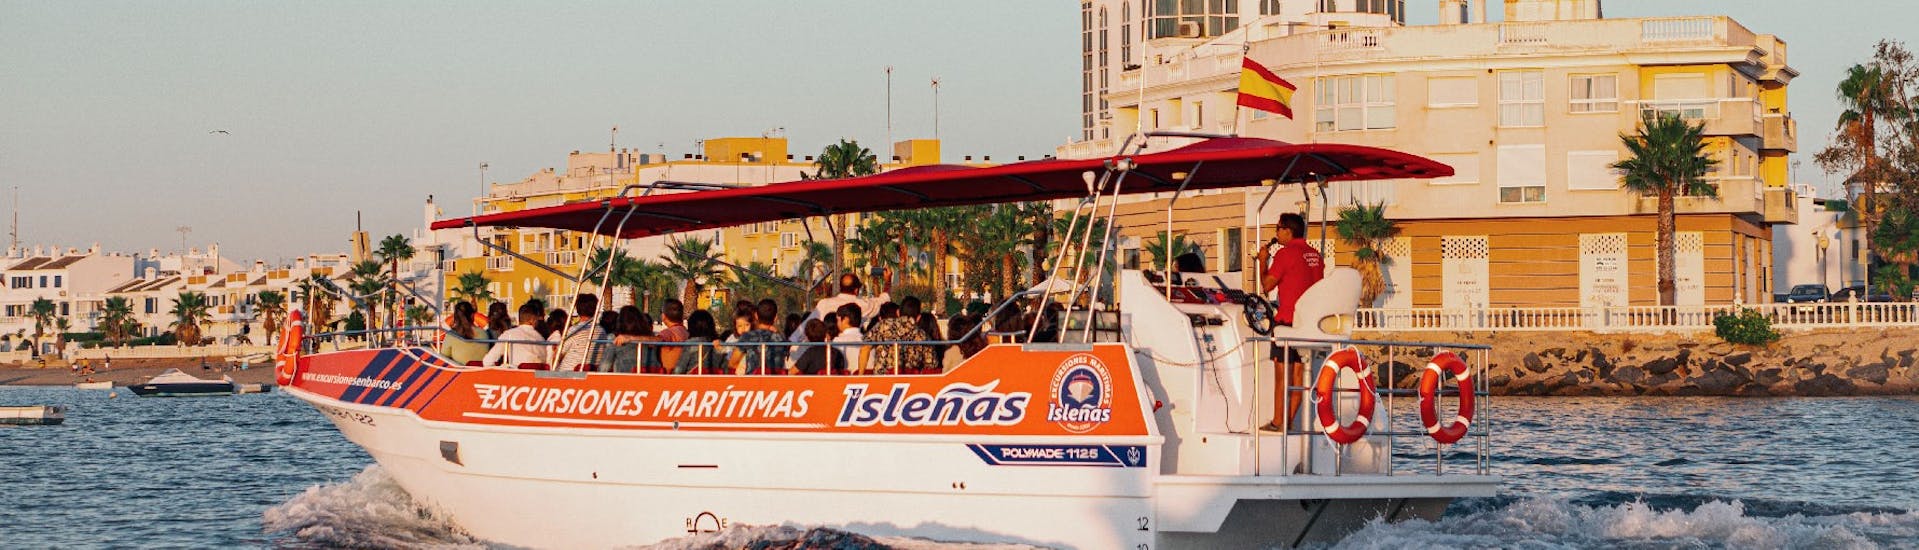 Giro in barca lungo le Marismas de Isla Cristina con Excursiones Marítimas Isleñas Huelva.